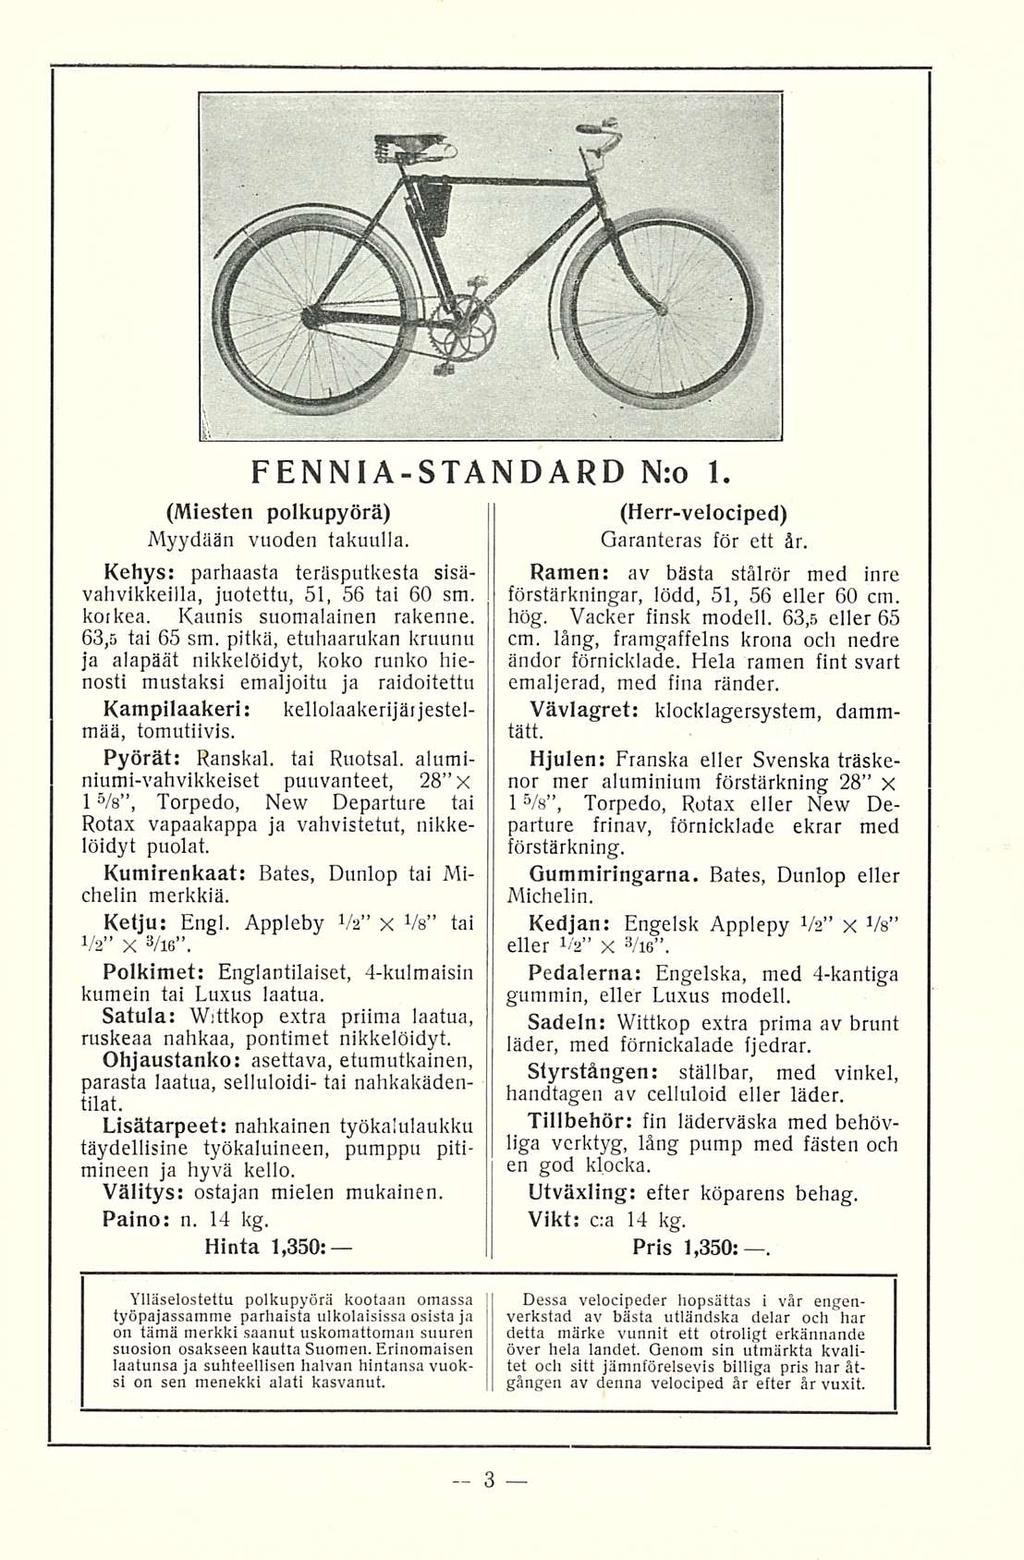 FENNIA-STANDARD N:o 1. (Miesten polkupyörä) Myydään vuoden takuulla. Kehys: parhaasta teräsputkesta sisävahvikkeilla, juotettu, 51, 56 tai 60 sm. korkea. Kaunis suomalainen rakenne. 63,5 tai 65 sm.